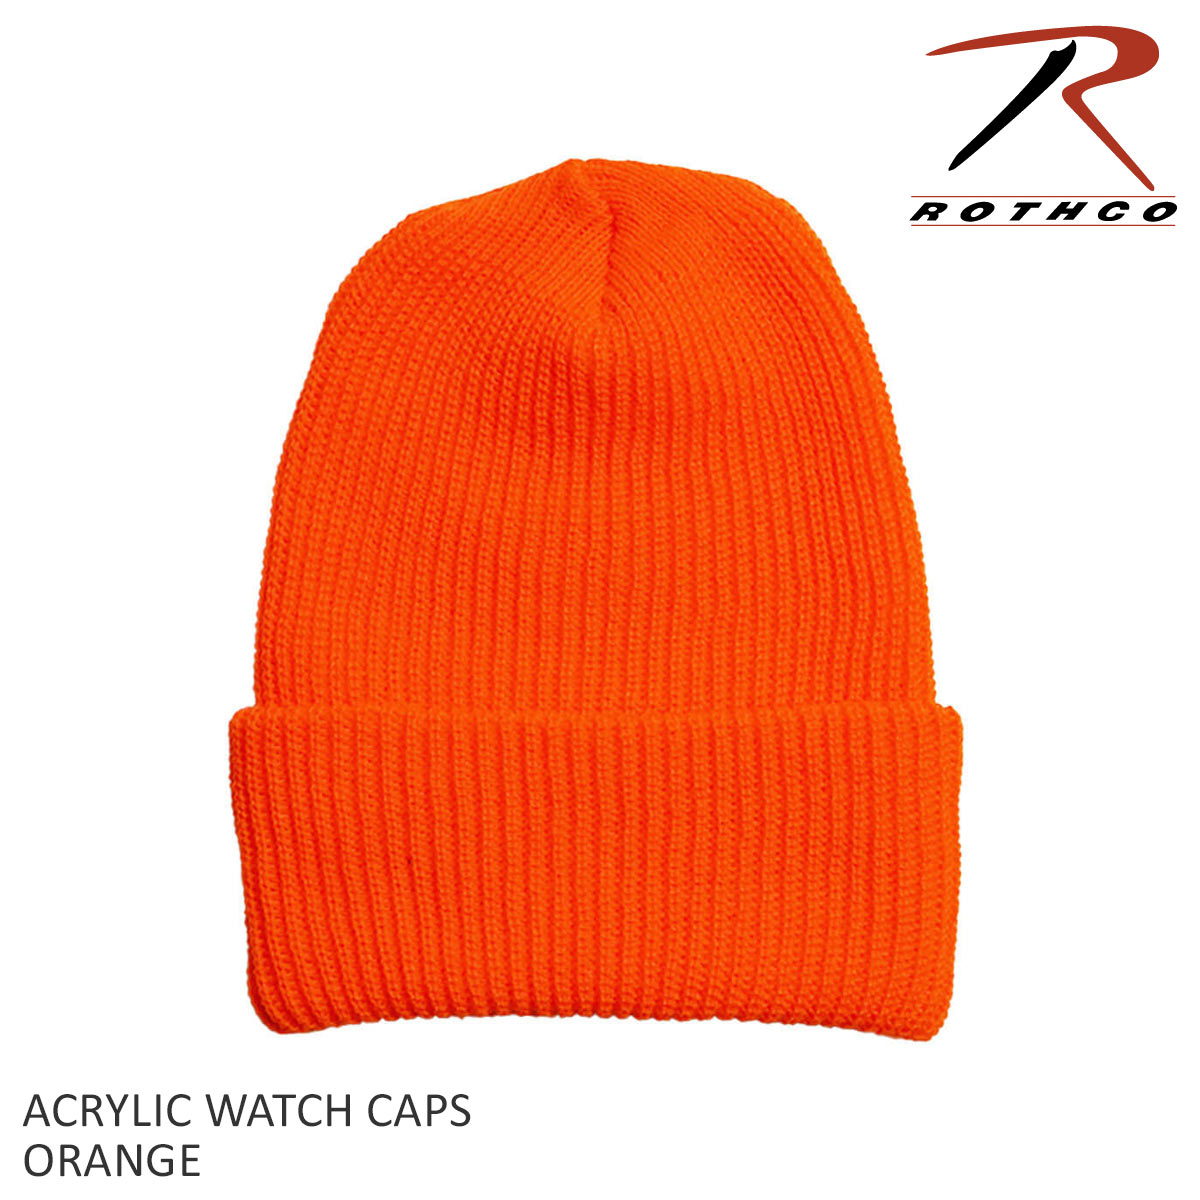 ロスコ ROTHCO アクリル ワッチキャップ 5438 メンズ レディース ユニセックス フリーサイズ ビーニー ニットキャップ ニット帽 帽子  ロールアップ ショート